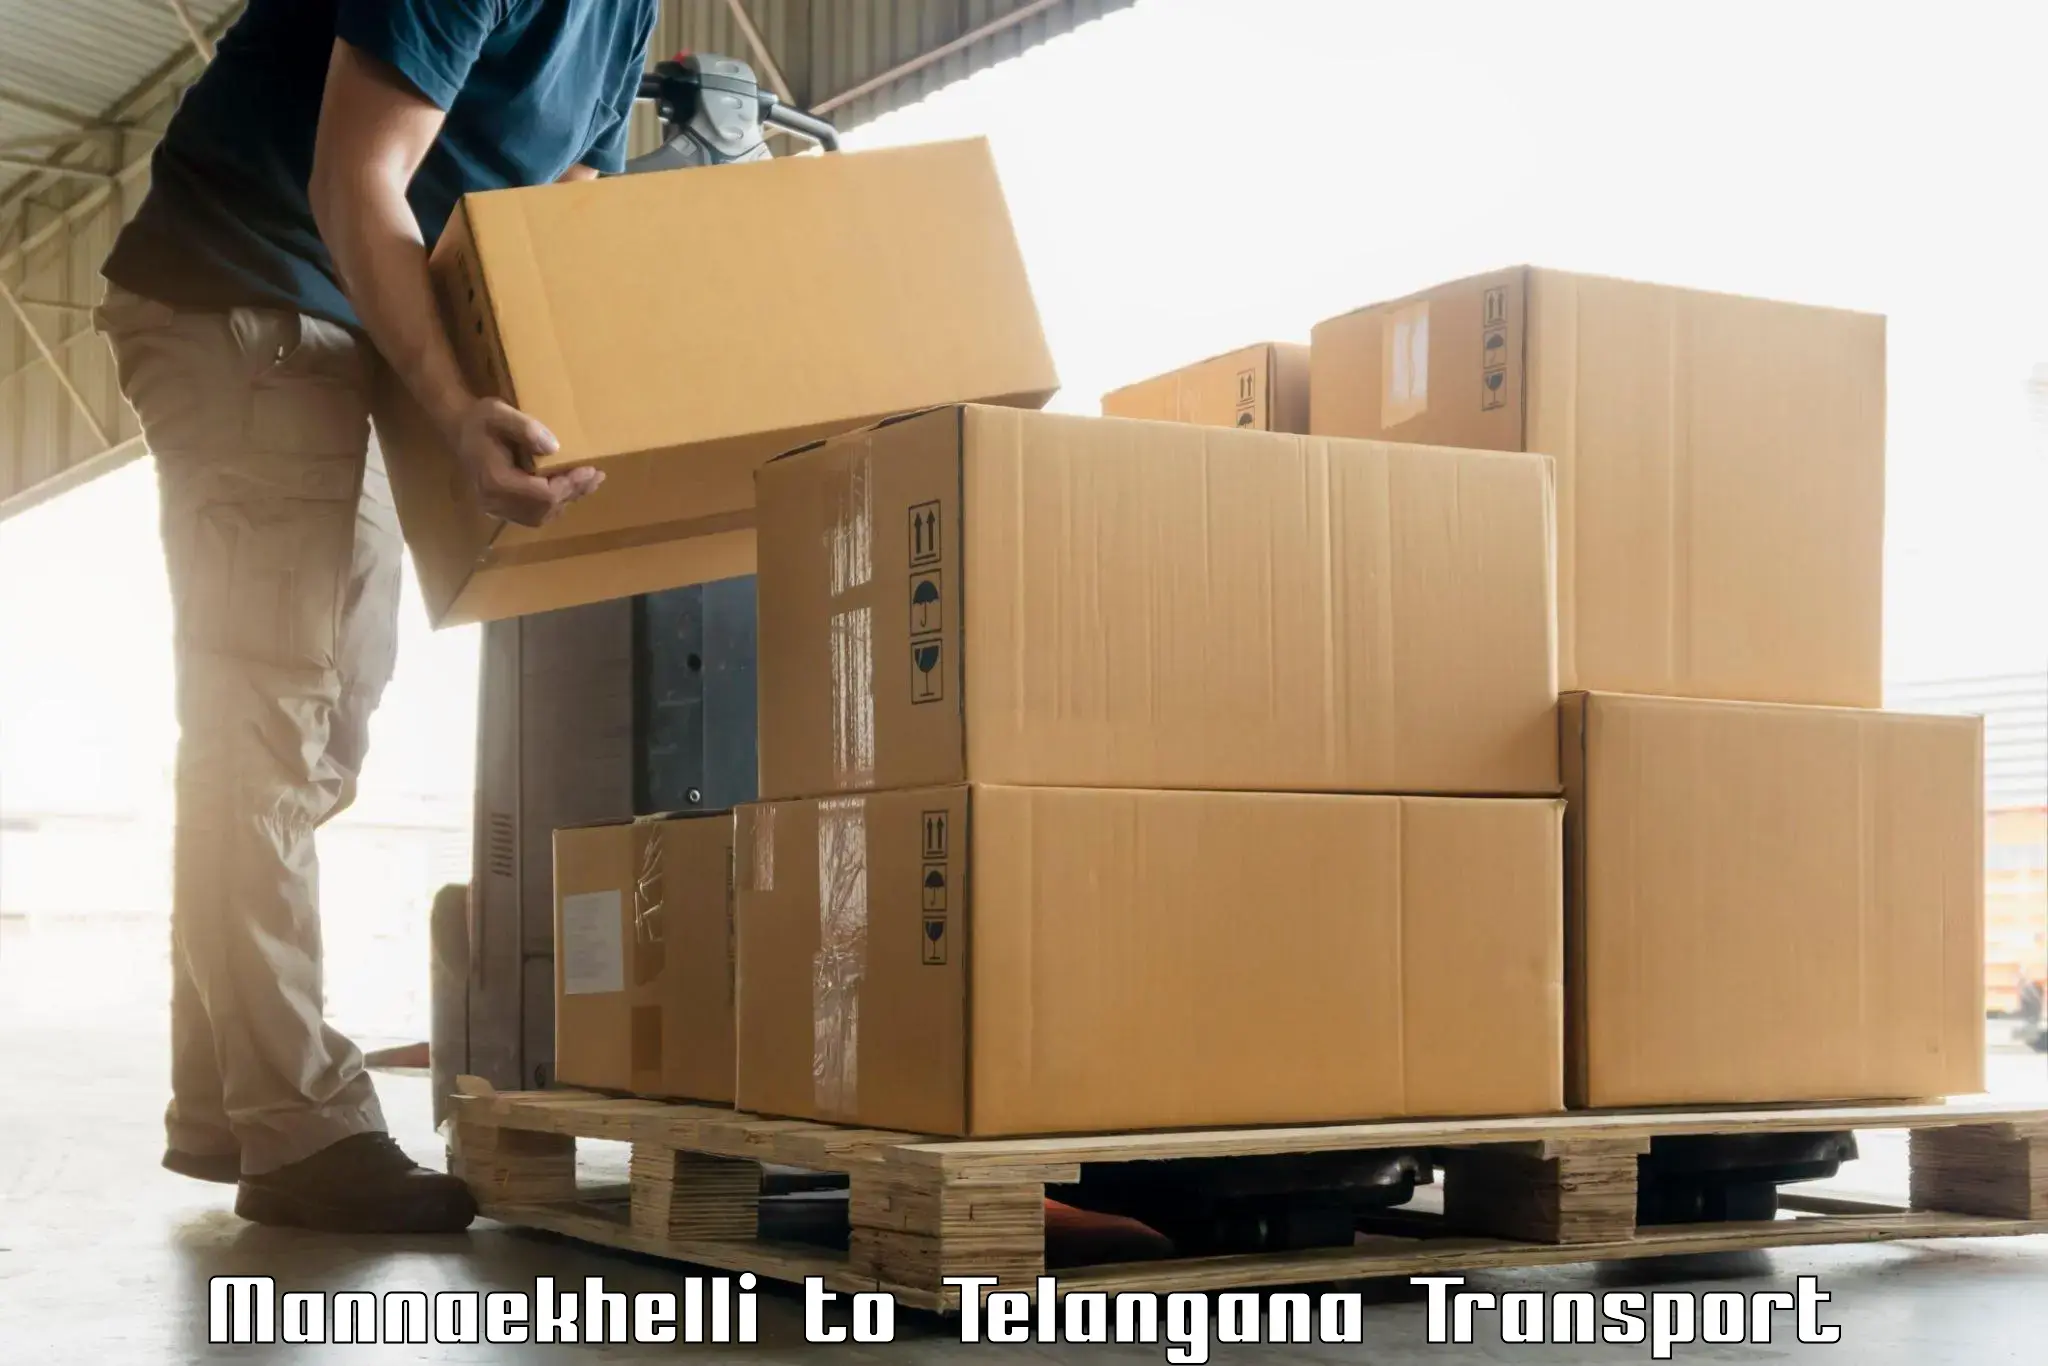 Air cargo transport services Mannaekhelli to Sikanderguda